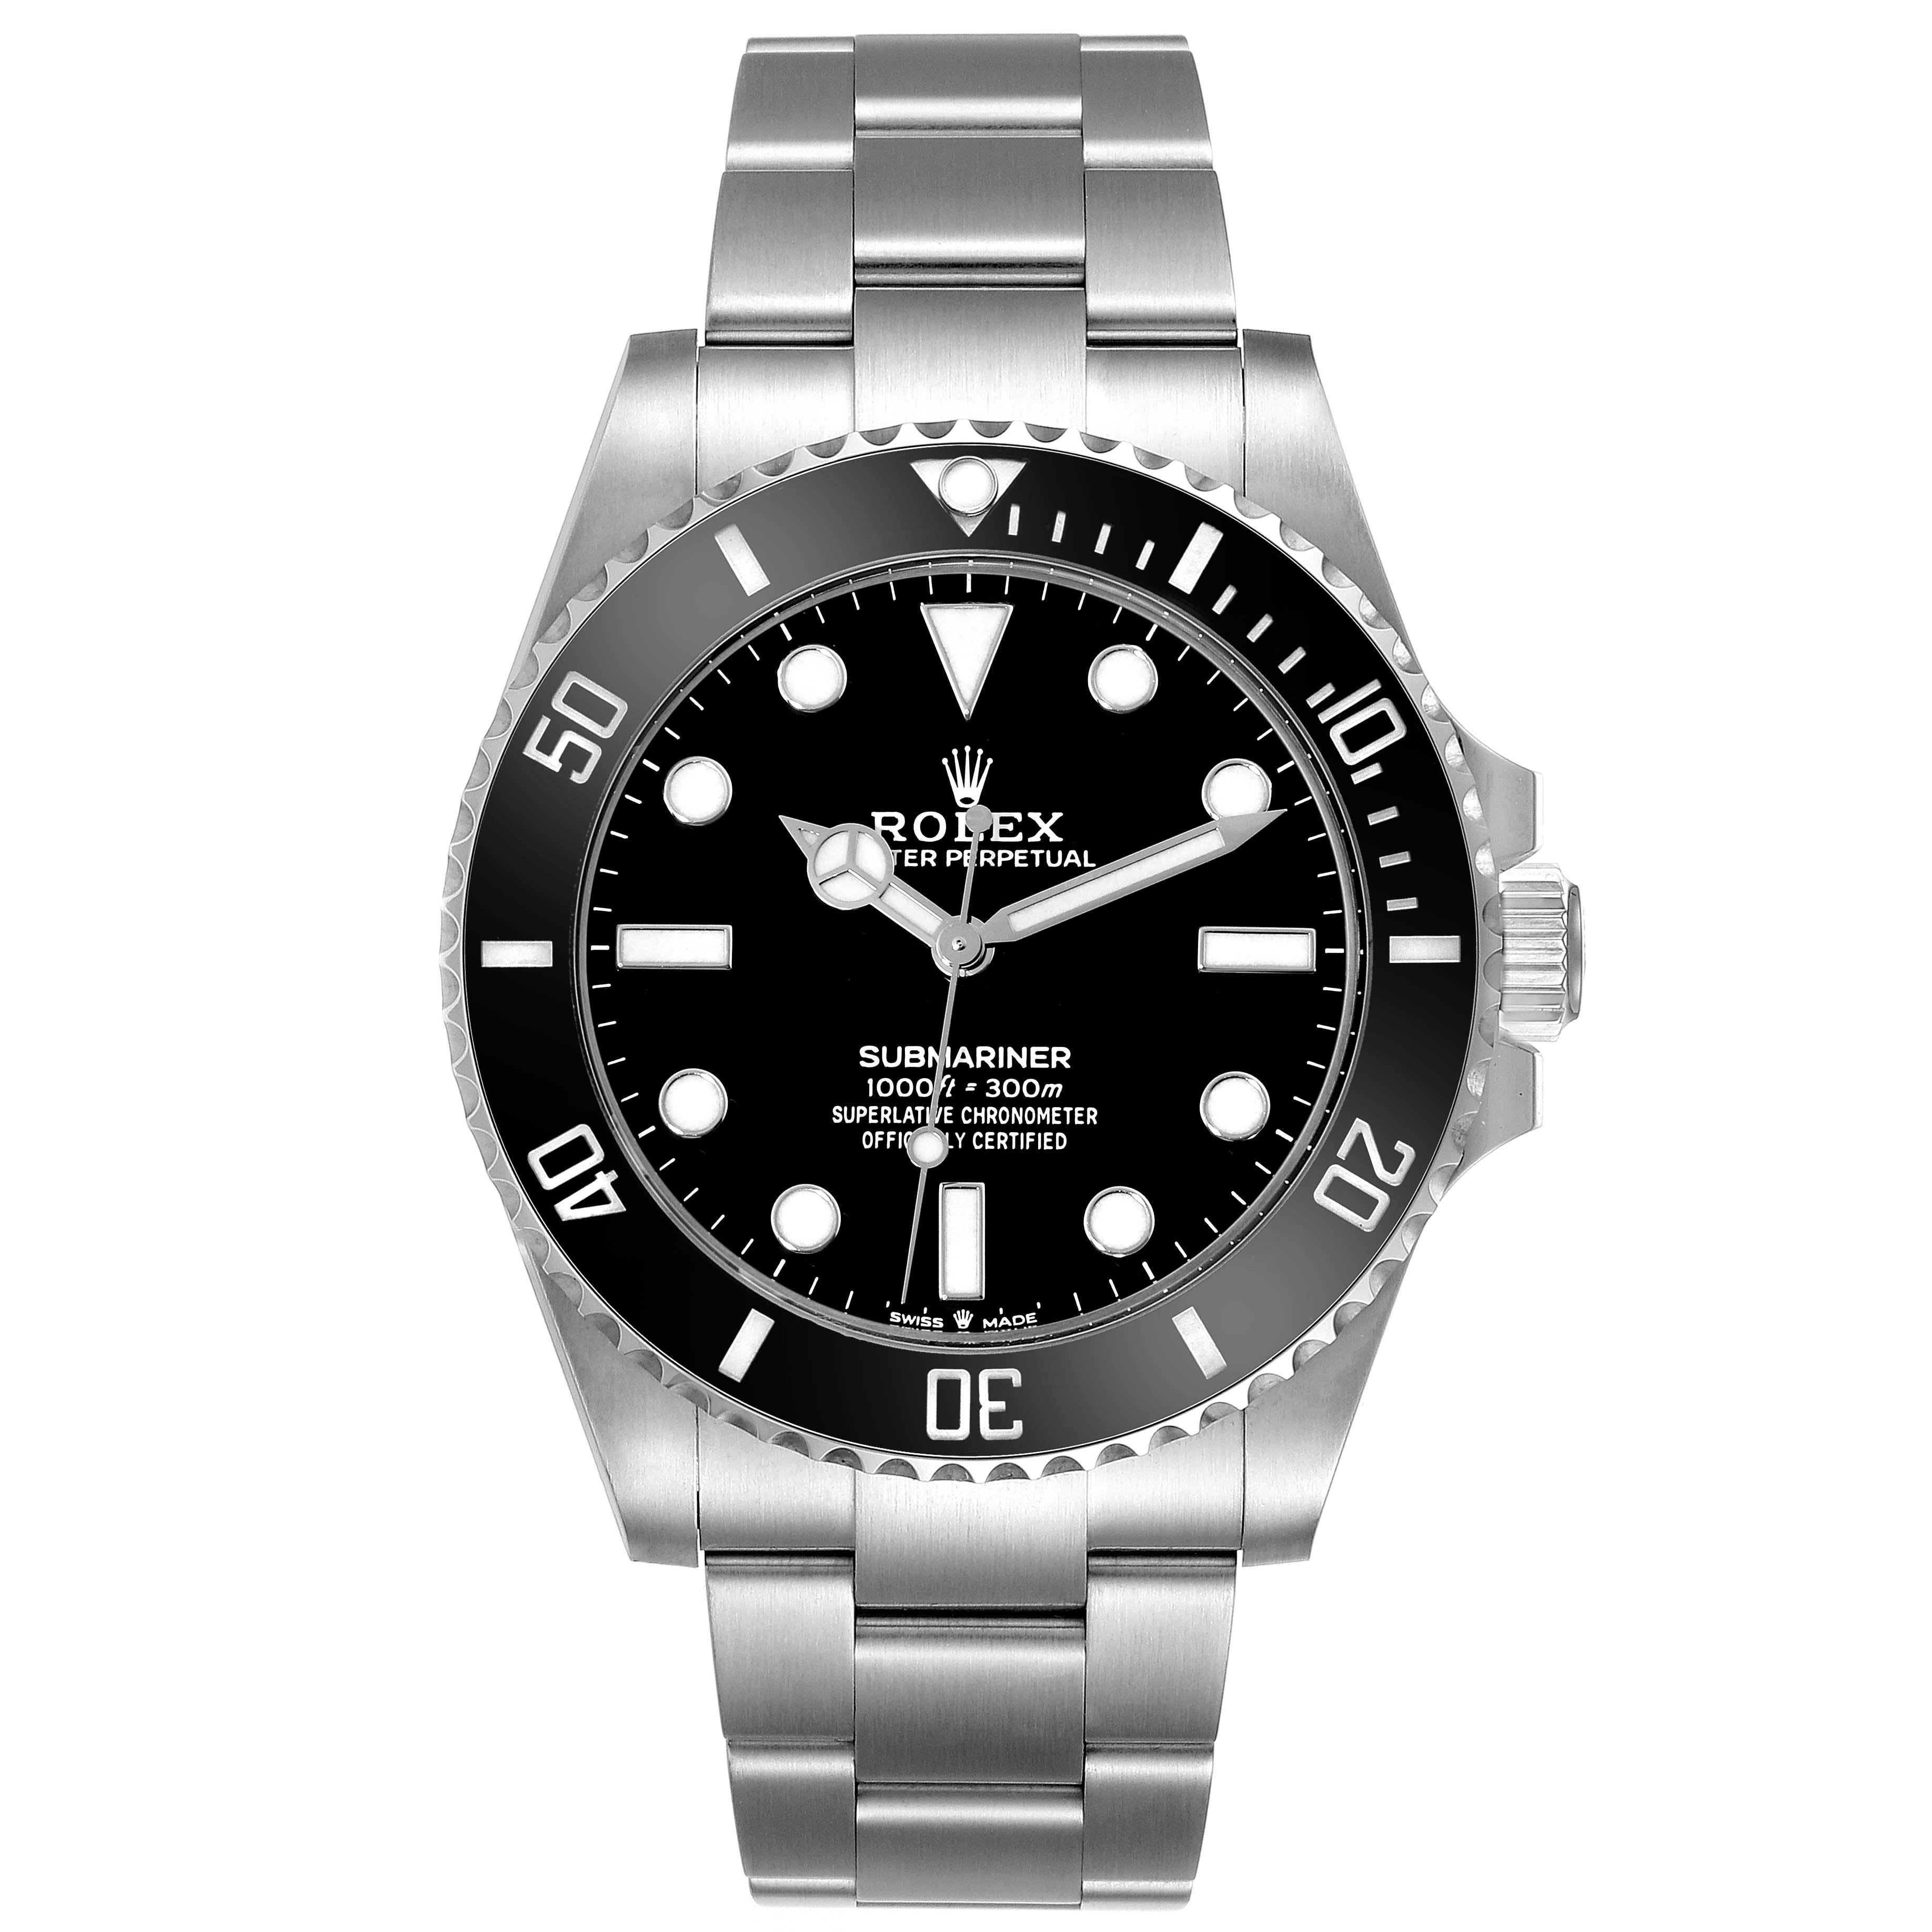 Rolex Submariner Non-Date Ceramic Bezel Steel Mens Watch 124060 Unworn. Mouvement automatique à remontage automatique, officiellement certifié chronomètre. Boîtier en acier inoxydable de 41.0 mm de diamètre. Logo Rolex sur la couronne. Lunette